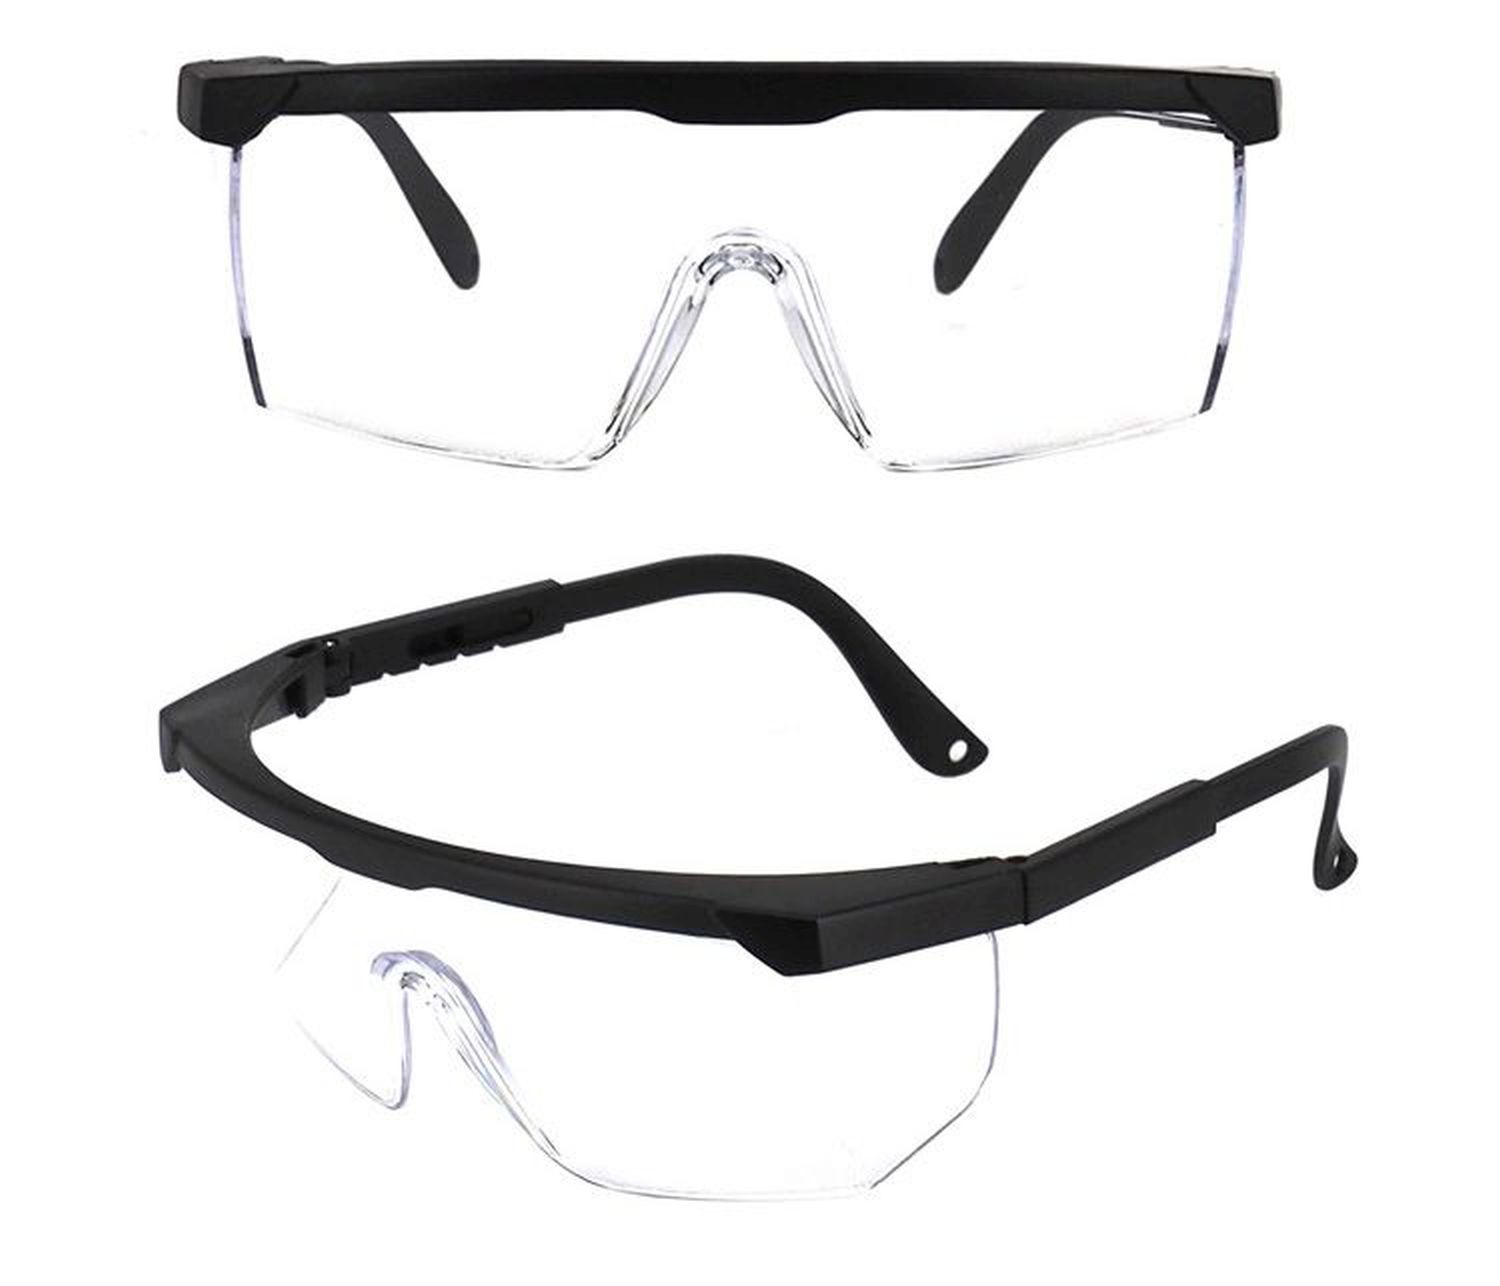 Sicherheitsbrille transparent/schwarz